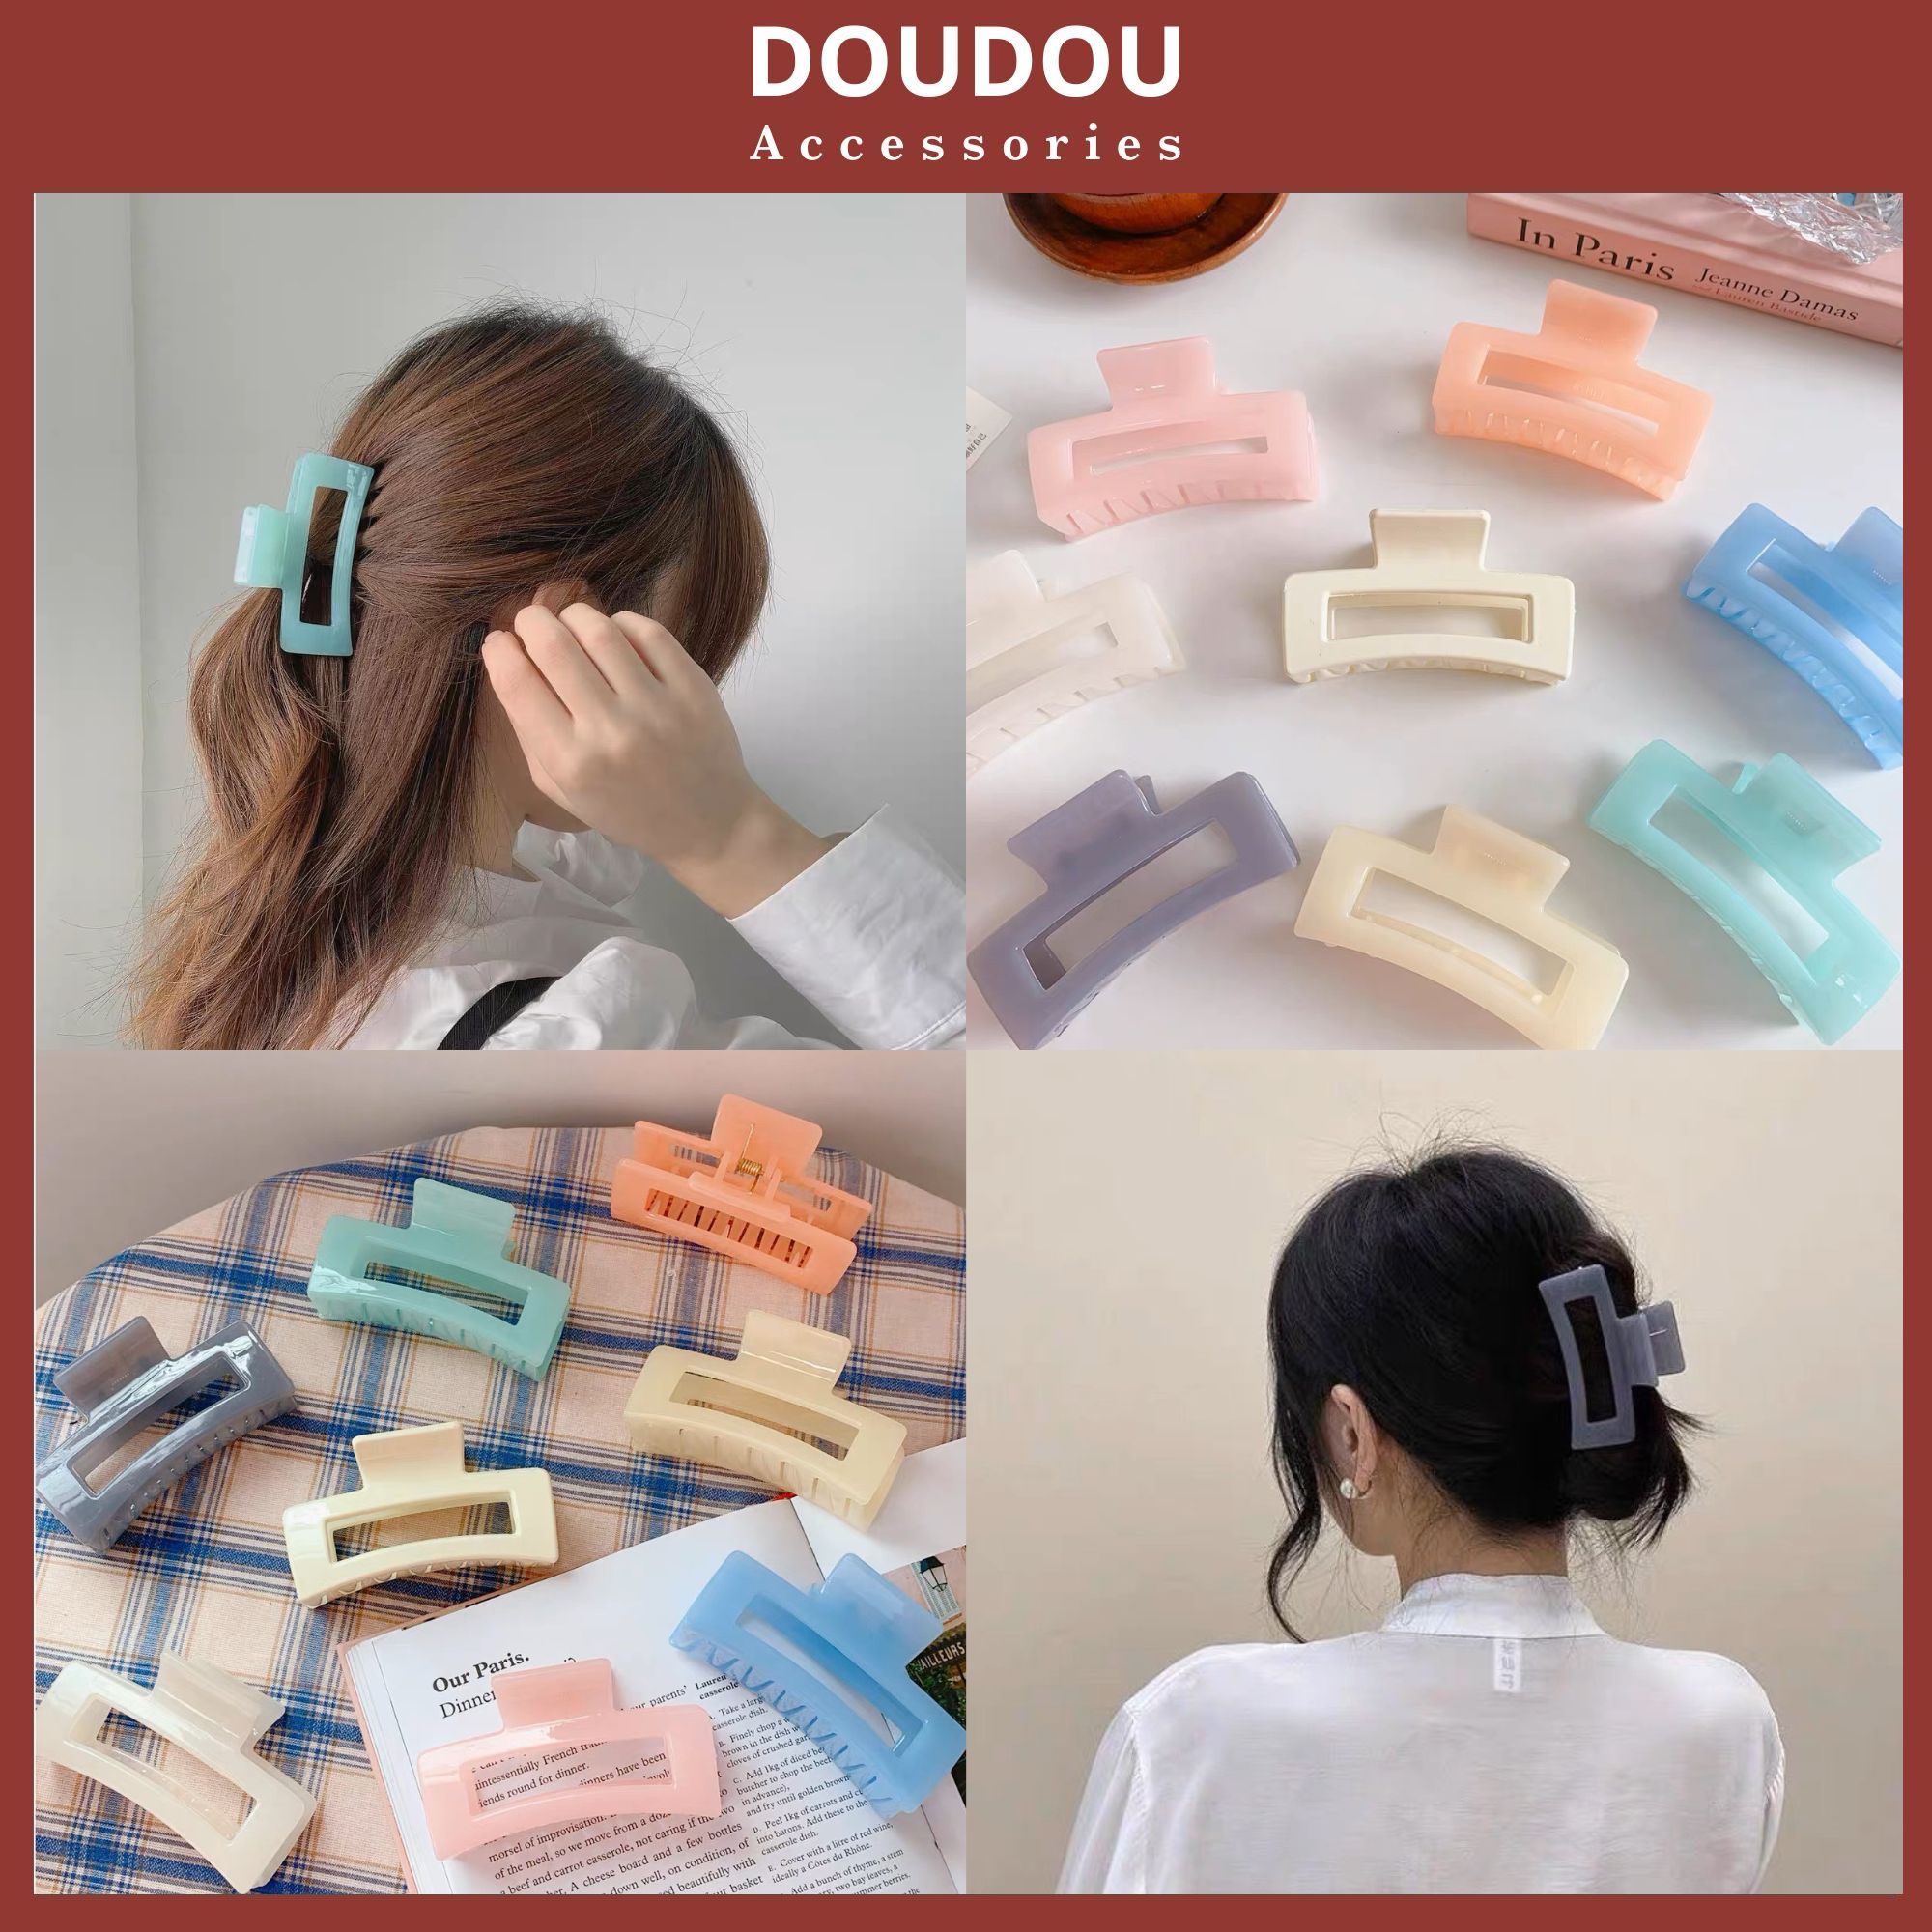 Doudou là món đồ chơi dễ thương và quen thuộc với các bé yêu. Hãy xem hình ảnh liên quan để thấy sự đáng yêu của doudou nhé!